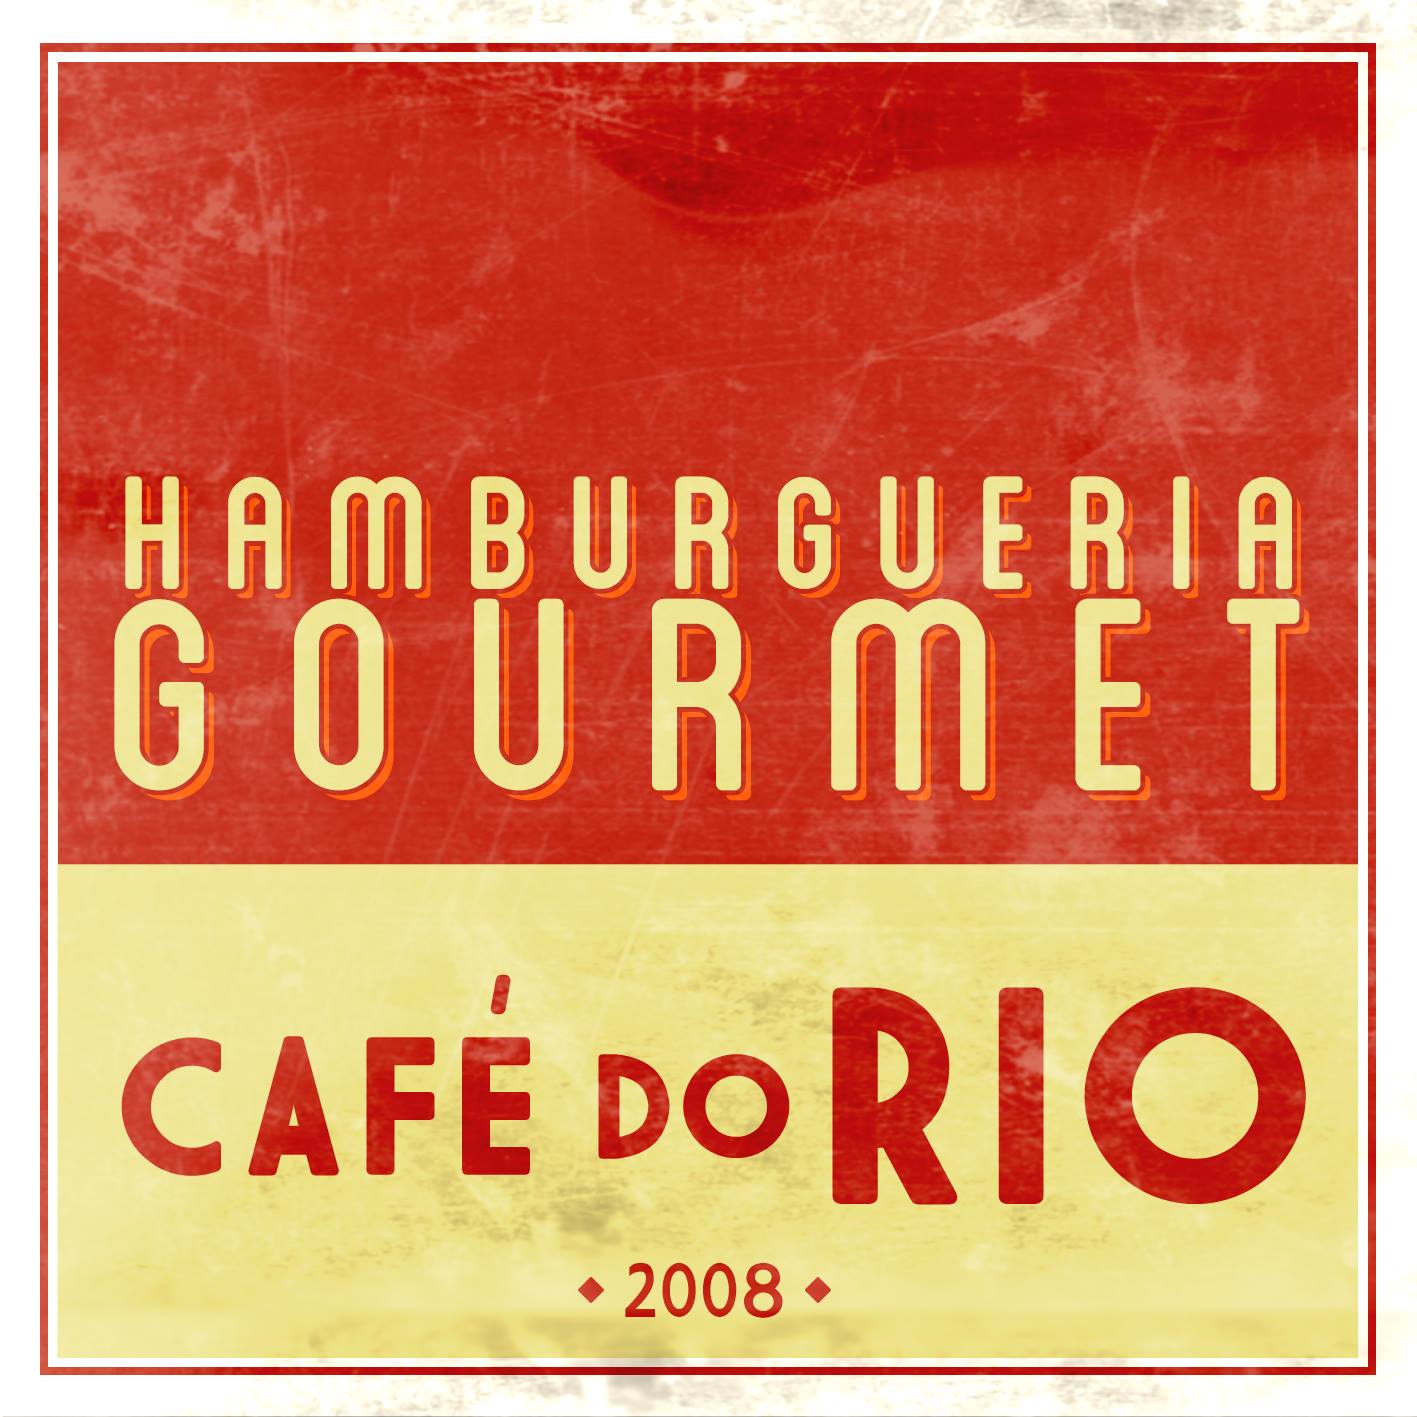 Café do Rio, Hamburgueria gourmet, o novo estabelecimento certificado pela APC.